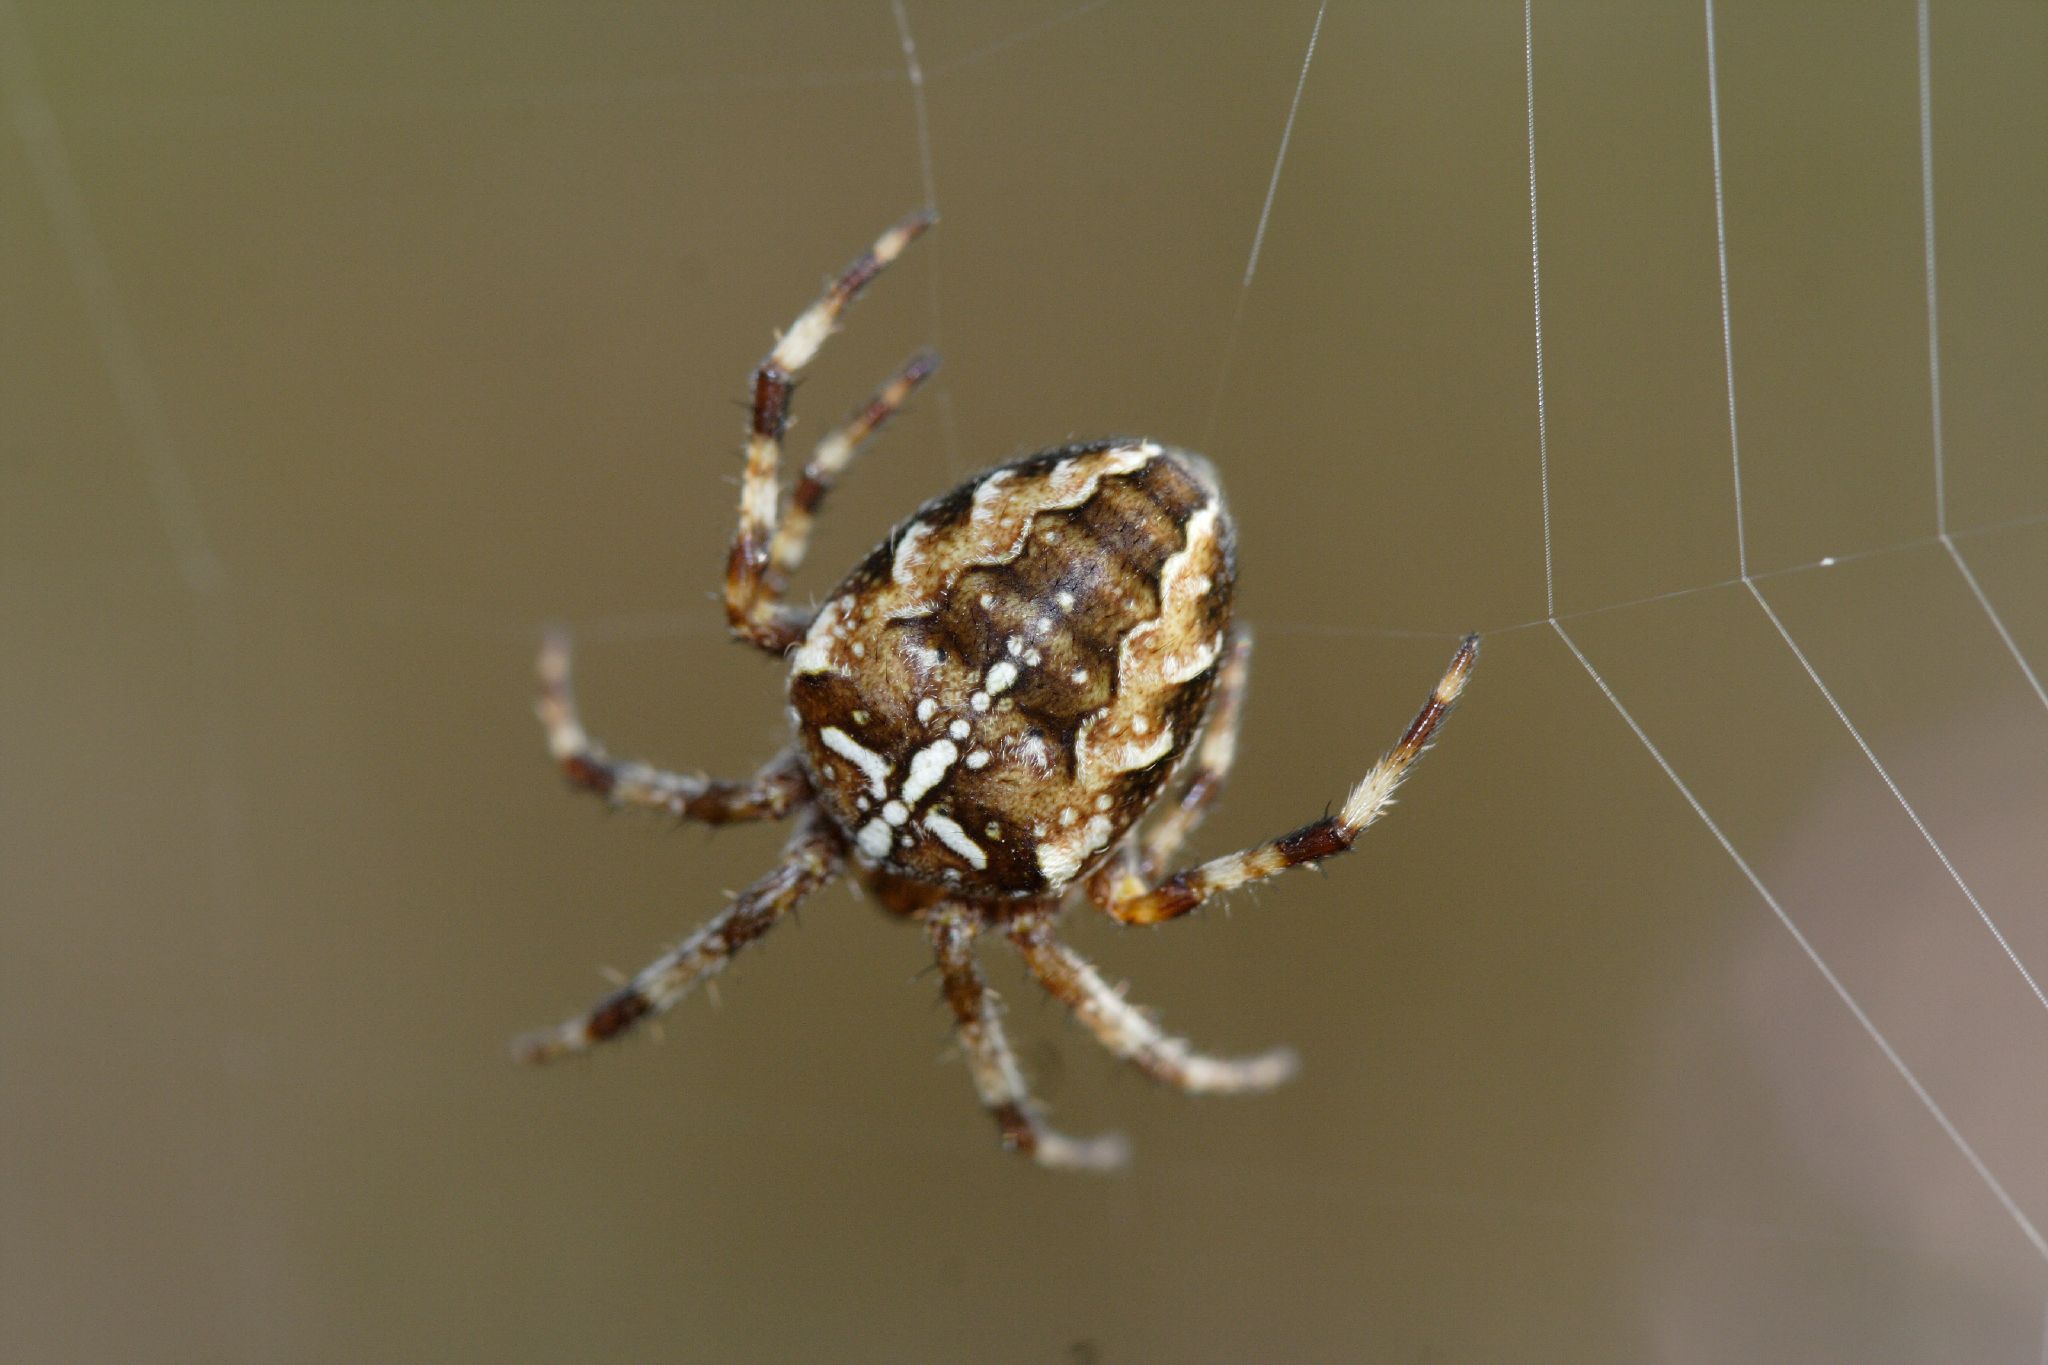 Spider + Web . Credit: James Laing (Flickr)